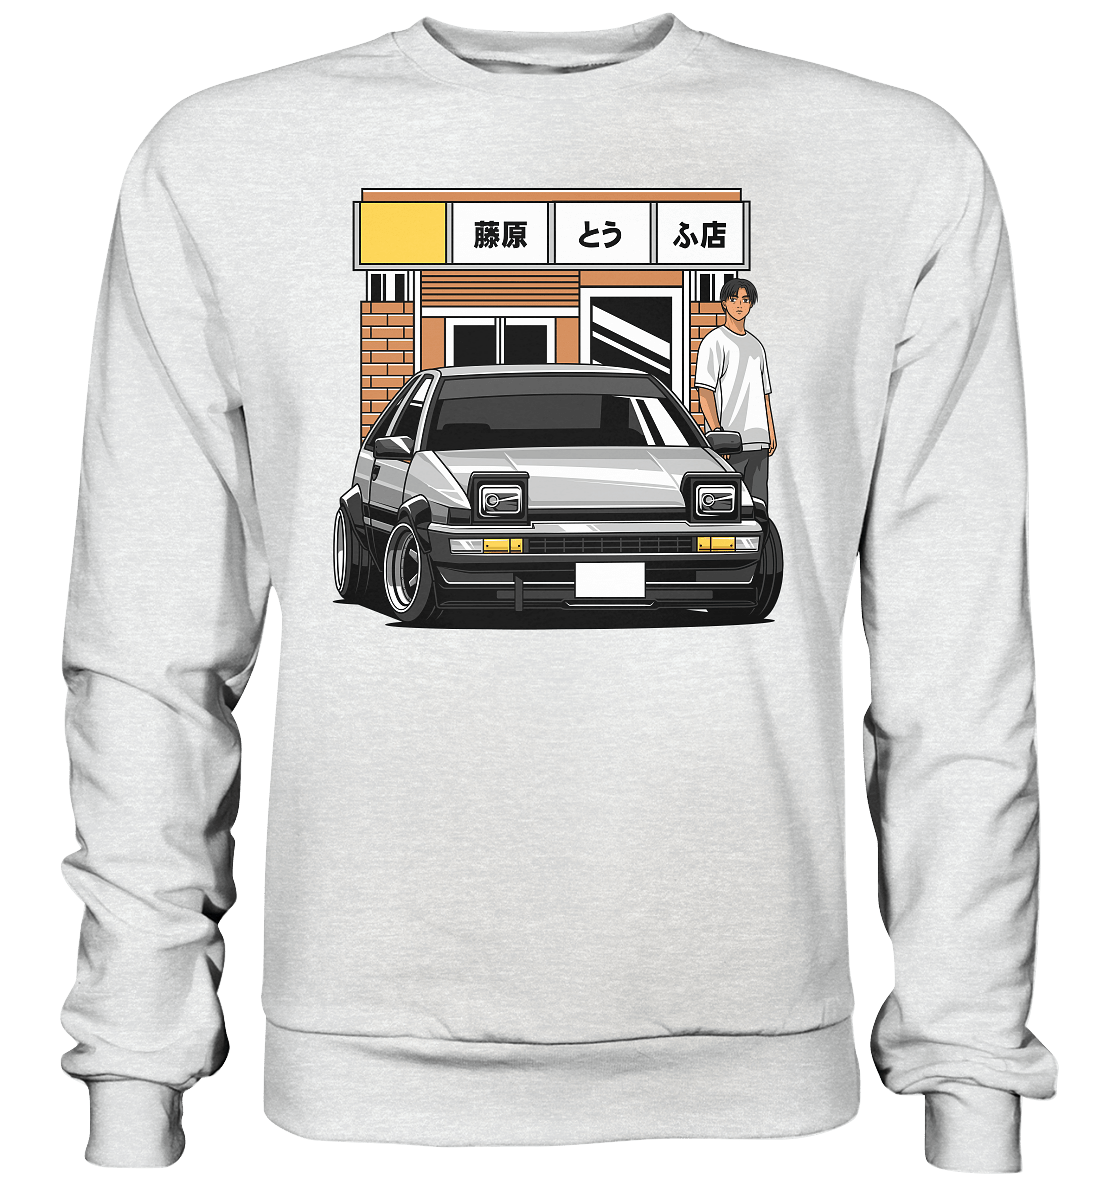 Tofu AE86 - Premium Sweatshirt - MotoMerch.de